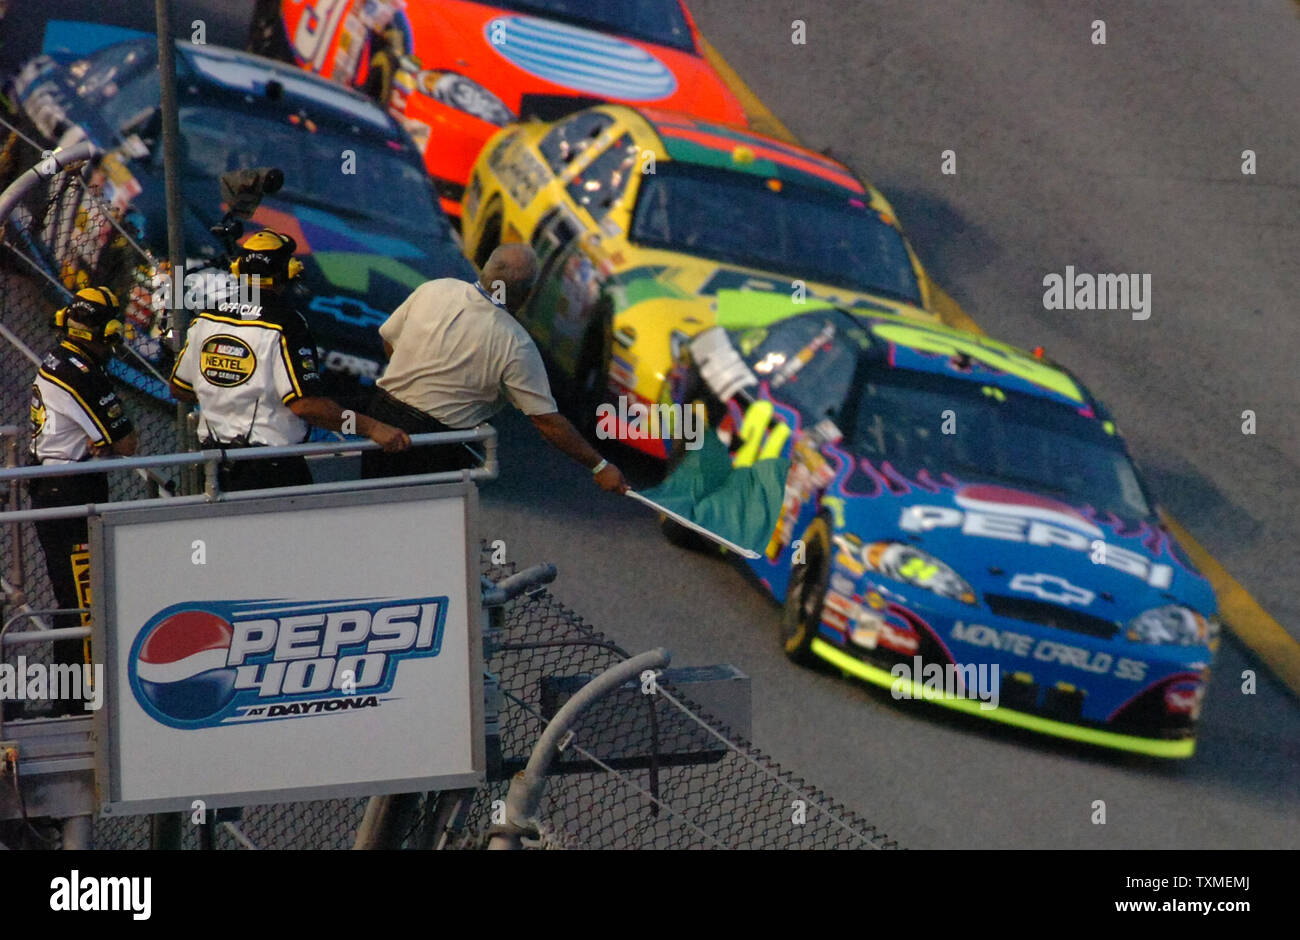 Jeff Gordon (24) takes the green flag to start the NASCAR Nextel